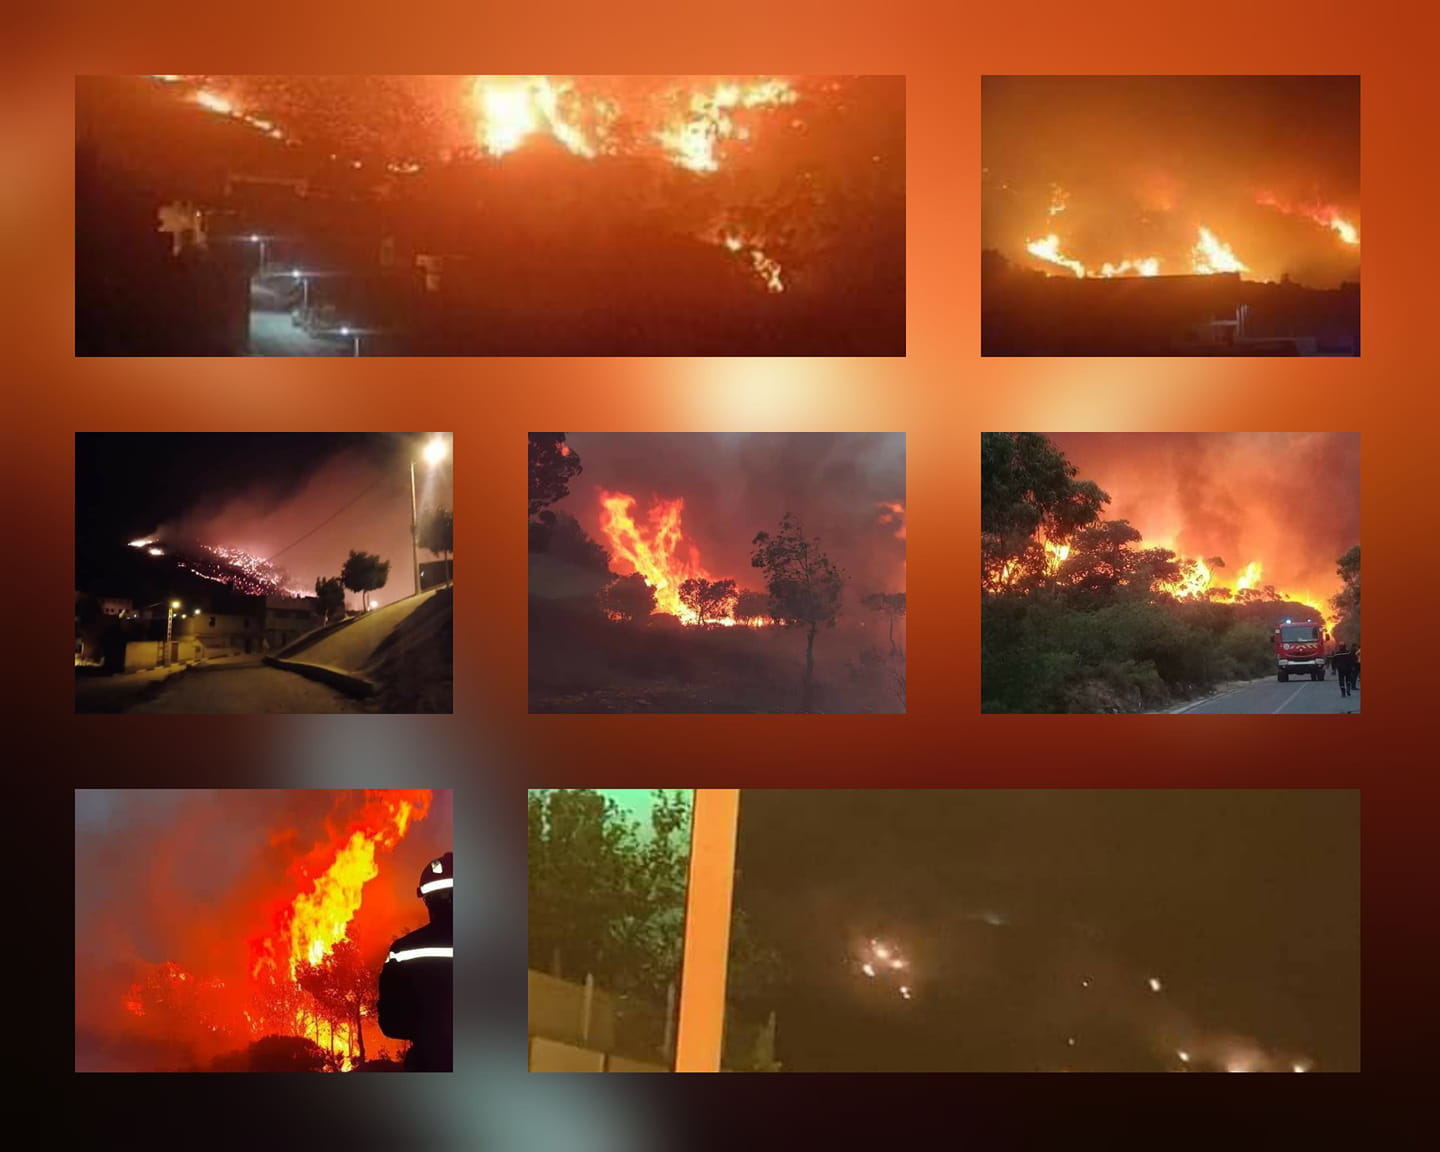 الحرائق تحاصر 10 ولايات وجهود عناصر الحماية المدنية متواصلة لإخمادها